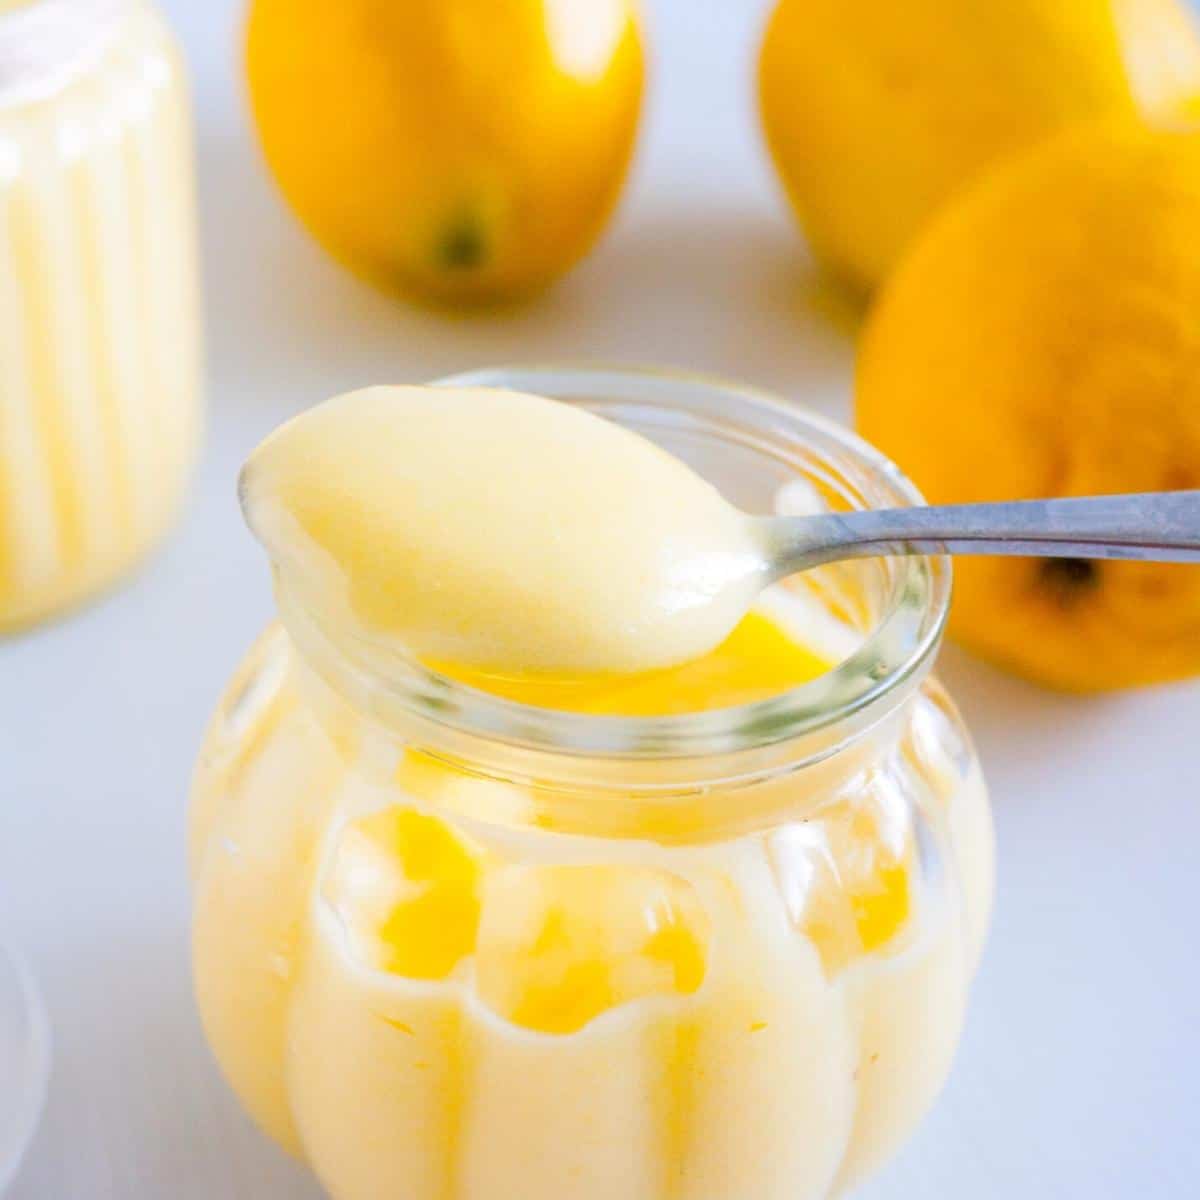 A spoon full of lemon fruit curd.